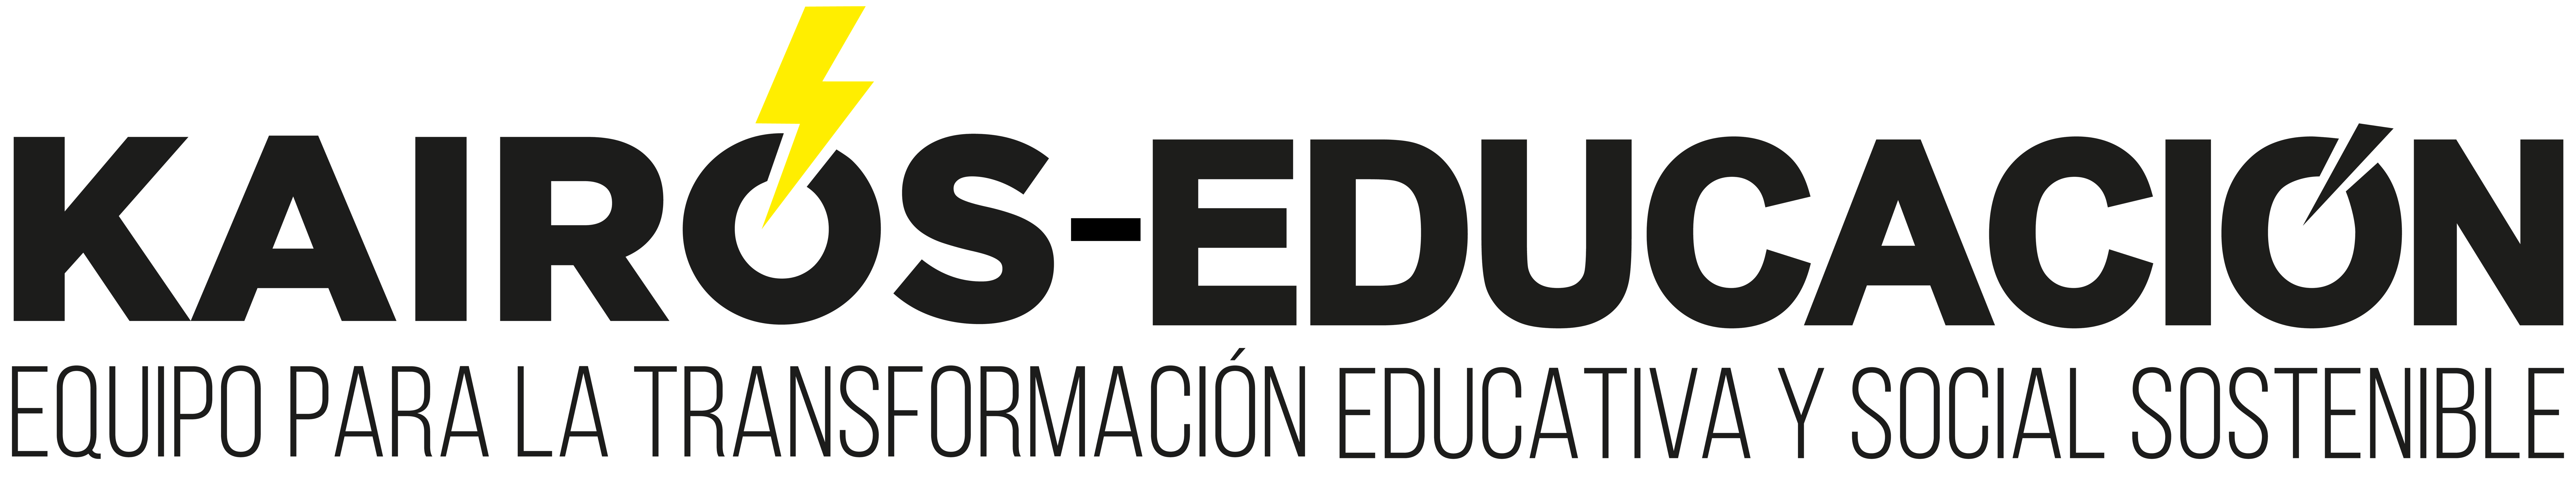 KAIRÓS-EDUCACIÓN: EQUIPO PARA LA TRANSFROMACIÓN EDUCATIVA Y SOSTENIBLE